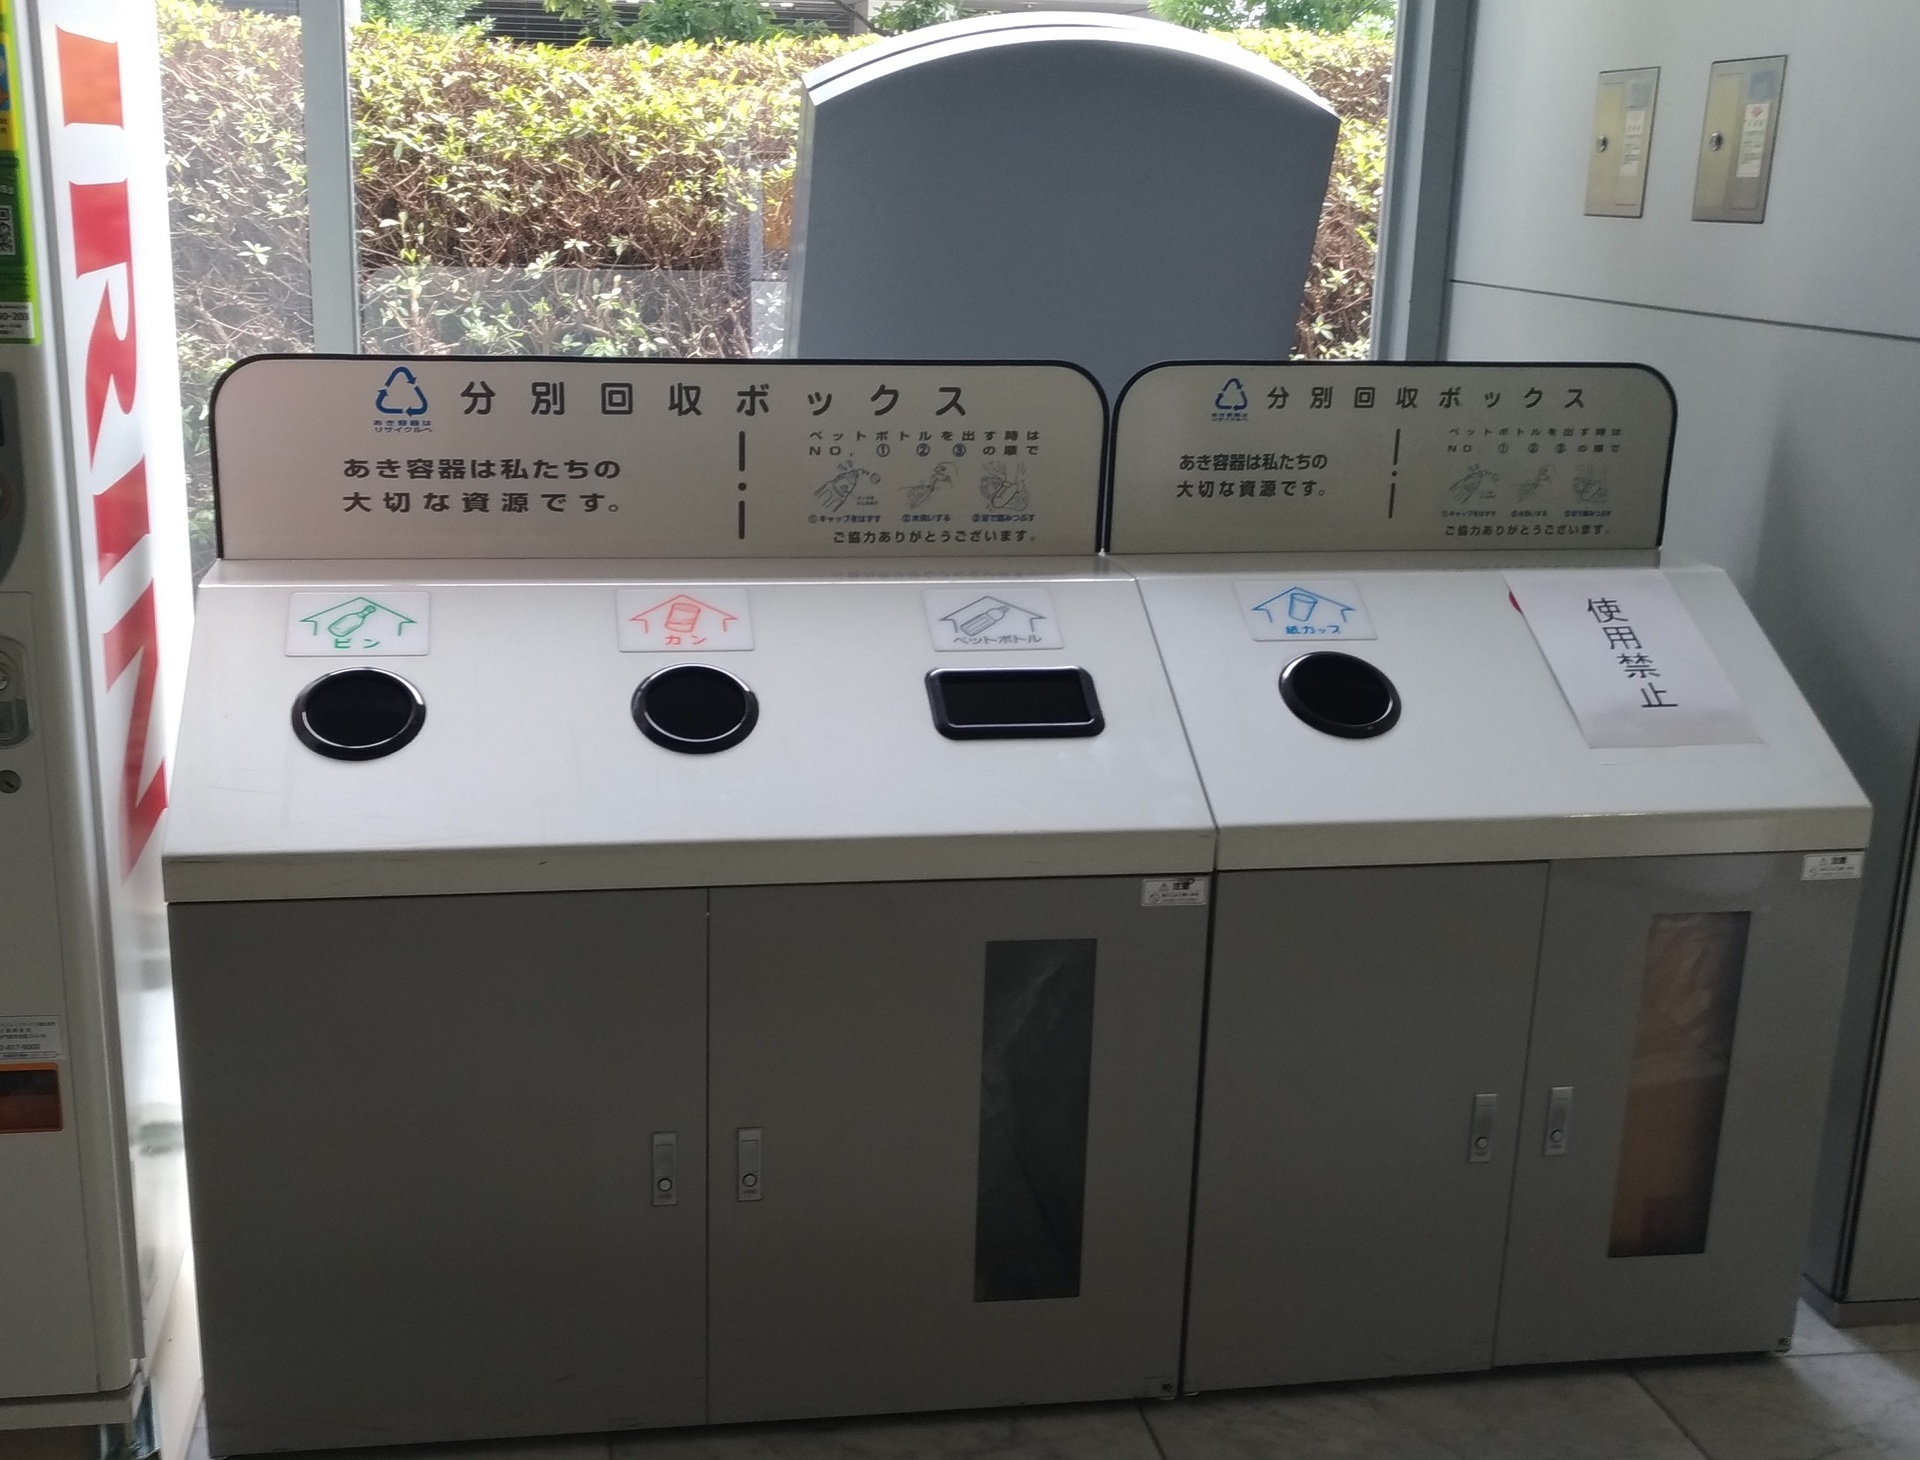 大阪サミット ゴミ箱使用禁止から自動販売機も 安全のため Zenfone 2 Laserカメラ スマホで写真 スクリーンショットブログ